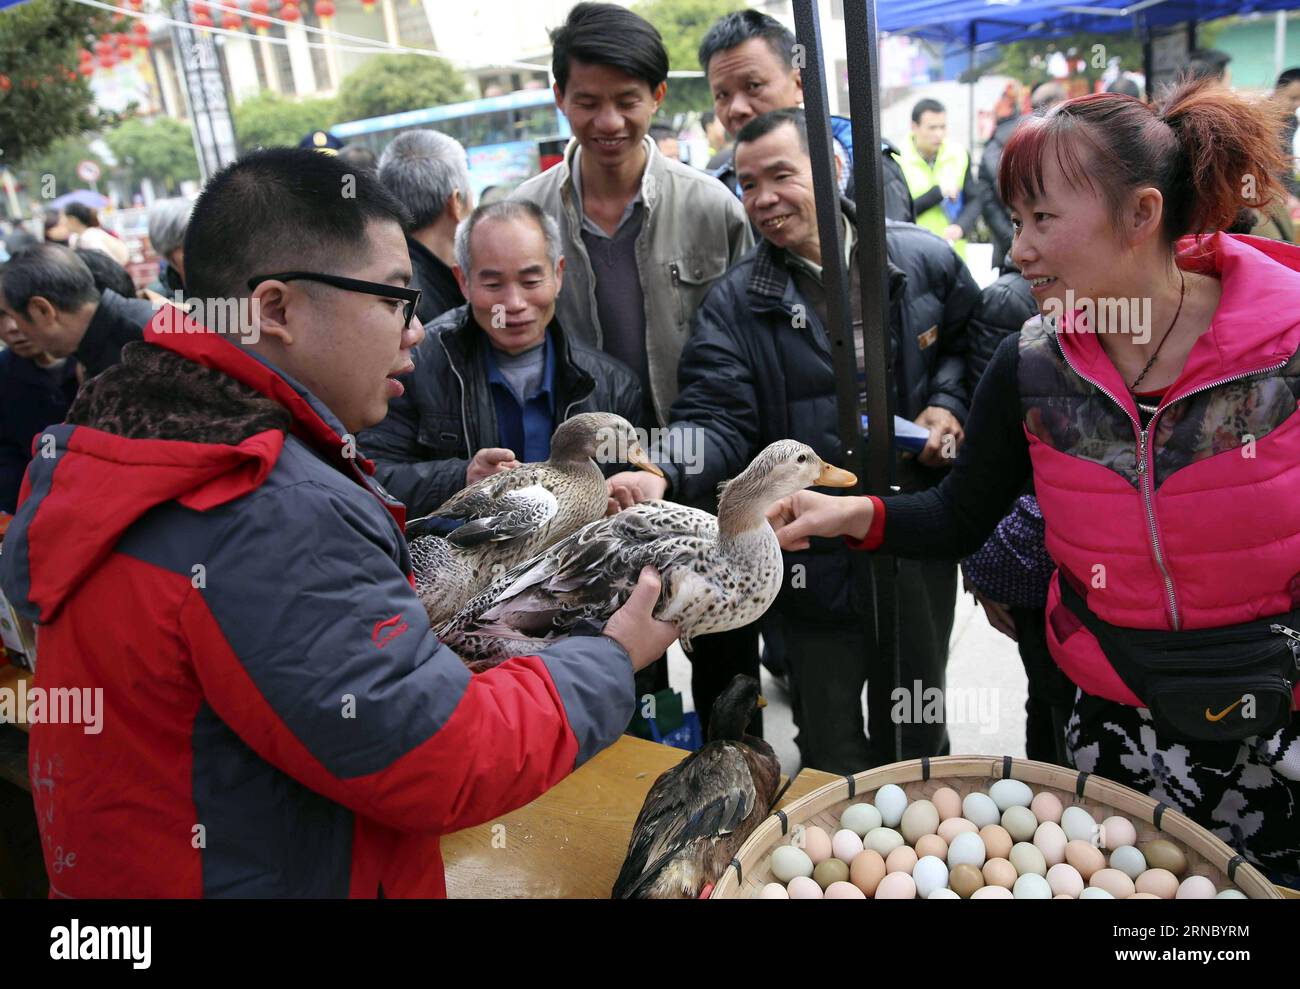 (160315) -- LIUZHOU, 15 de marzo de 2016 -- Meng Kechang (izq.), propietario de una empresa privada, les dice a los clientes cómo identificar a los patos genuinos Rongshui cultivados en el Condado Autónomo de Rongshui Miao, en el sur de la Región Autónoma de Guangxi Zhuang, en una plaza en Rongshui, 15 de marzo de 2016. Se llevaron a cabo una variedad de actividades en toda China para concienciar a los consumidores sobre la protección de sus derechos cuando el Día Internacional de los Derechos del Consumidor cayó el 15 de marzo. ) (Wjq) CHINA-DÍA DE DERECHOS DEL CONSUMIDOR-ACTIVIDADES (CN) LongxTao PUBLICATIONxNOTxINxCHN Liuzhou Marzo 15 2016 Meng Kechang l Propietario de una empresa privada dice c Foto de stock